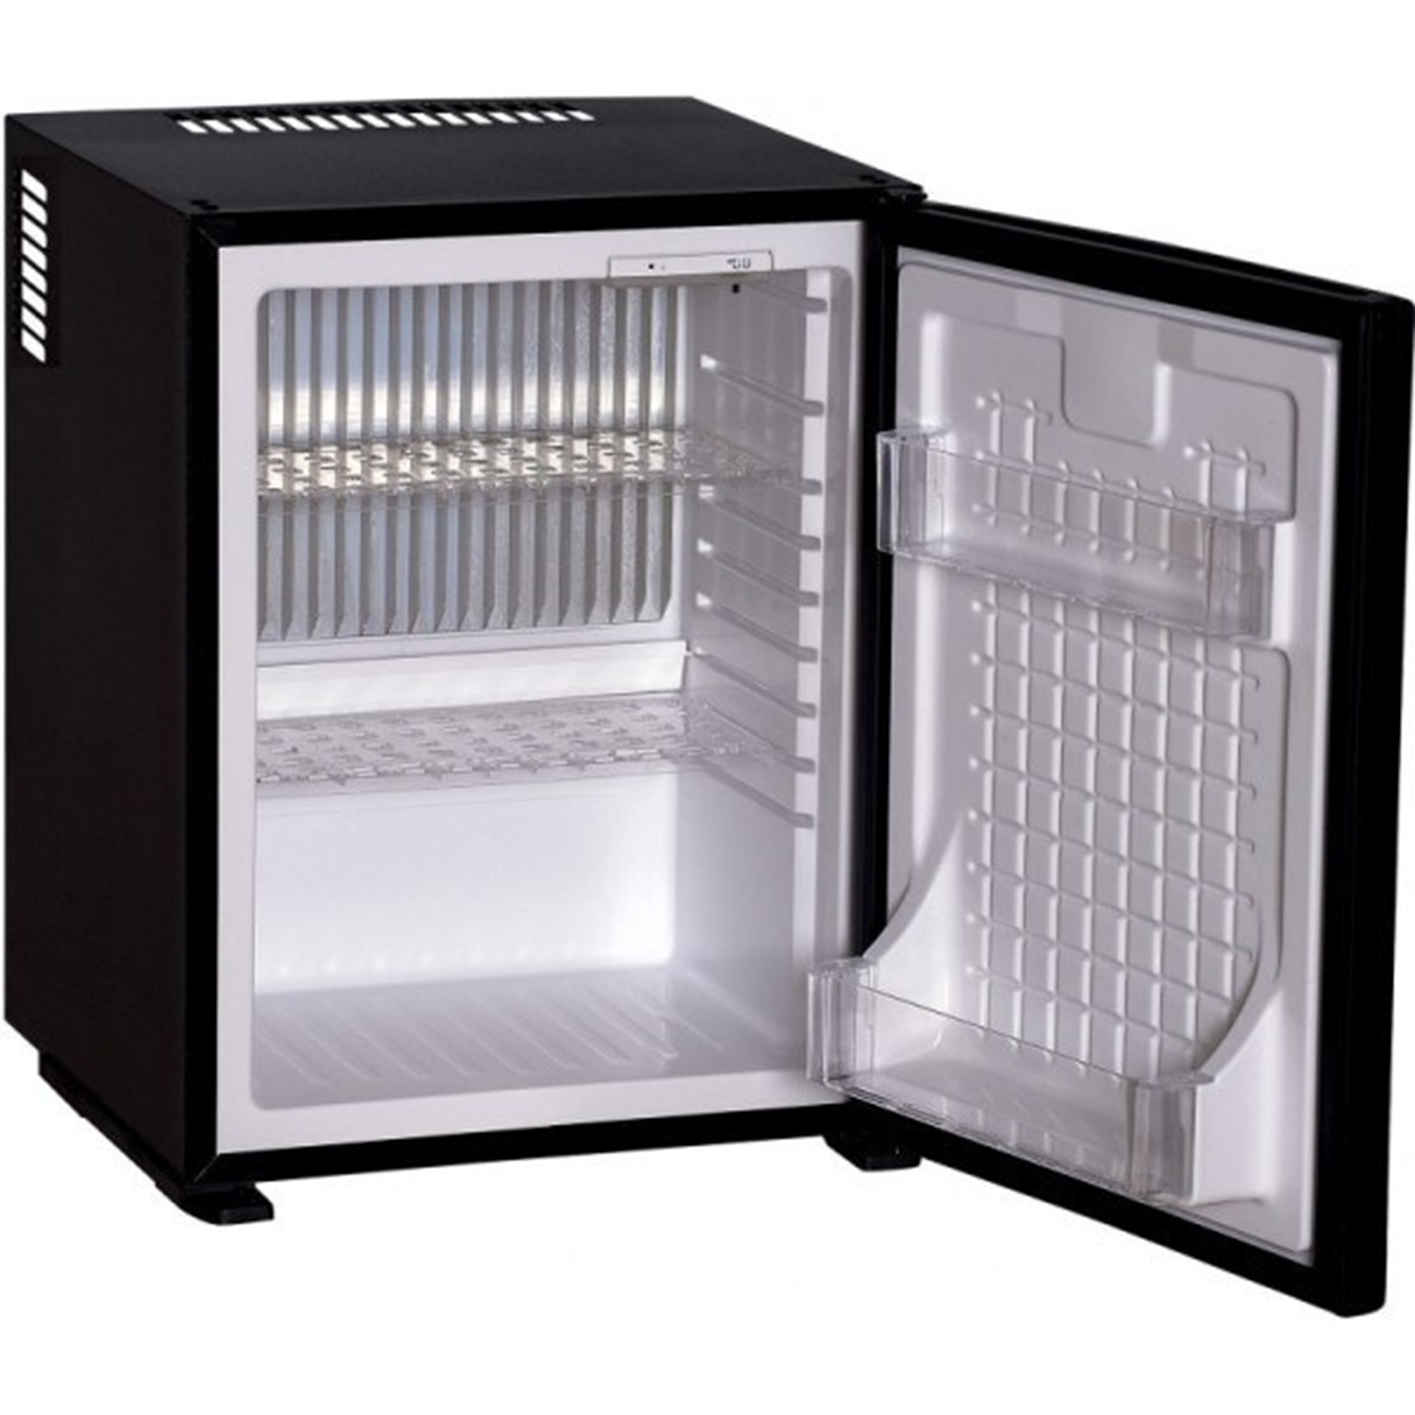 Hình ảnh của Tủ lạnh mini Hafele HF-M40G 536.14.011